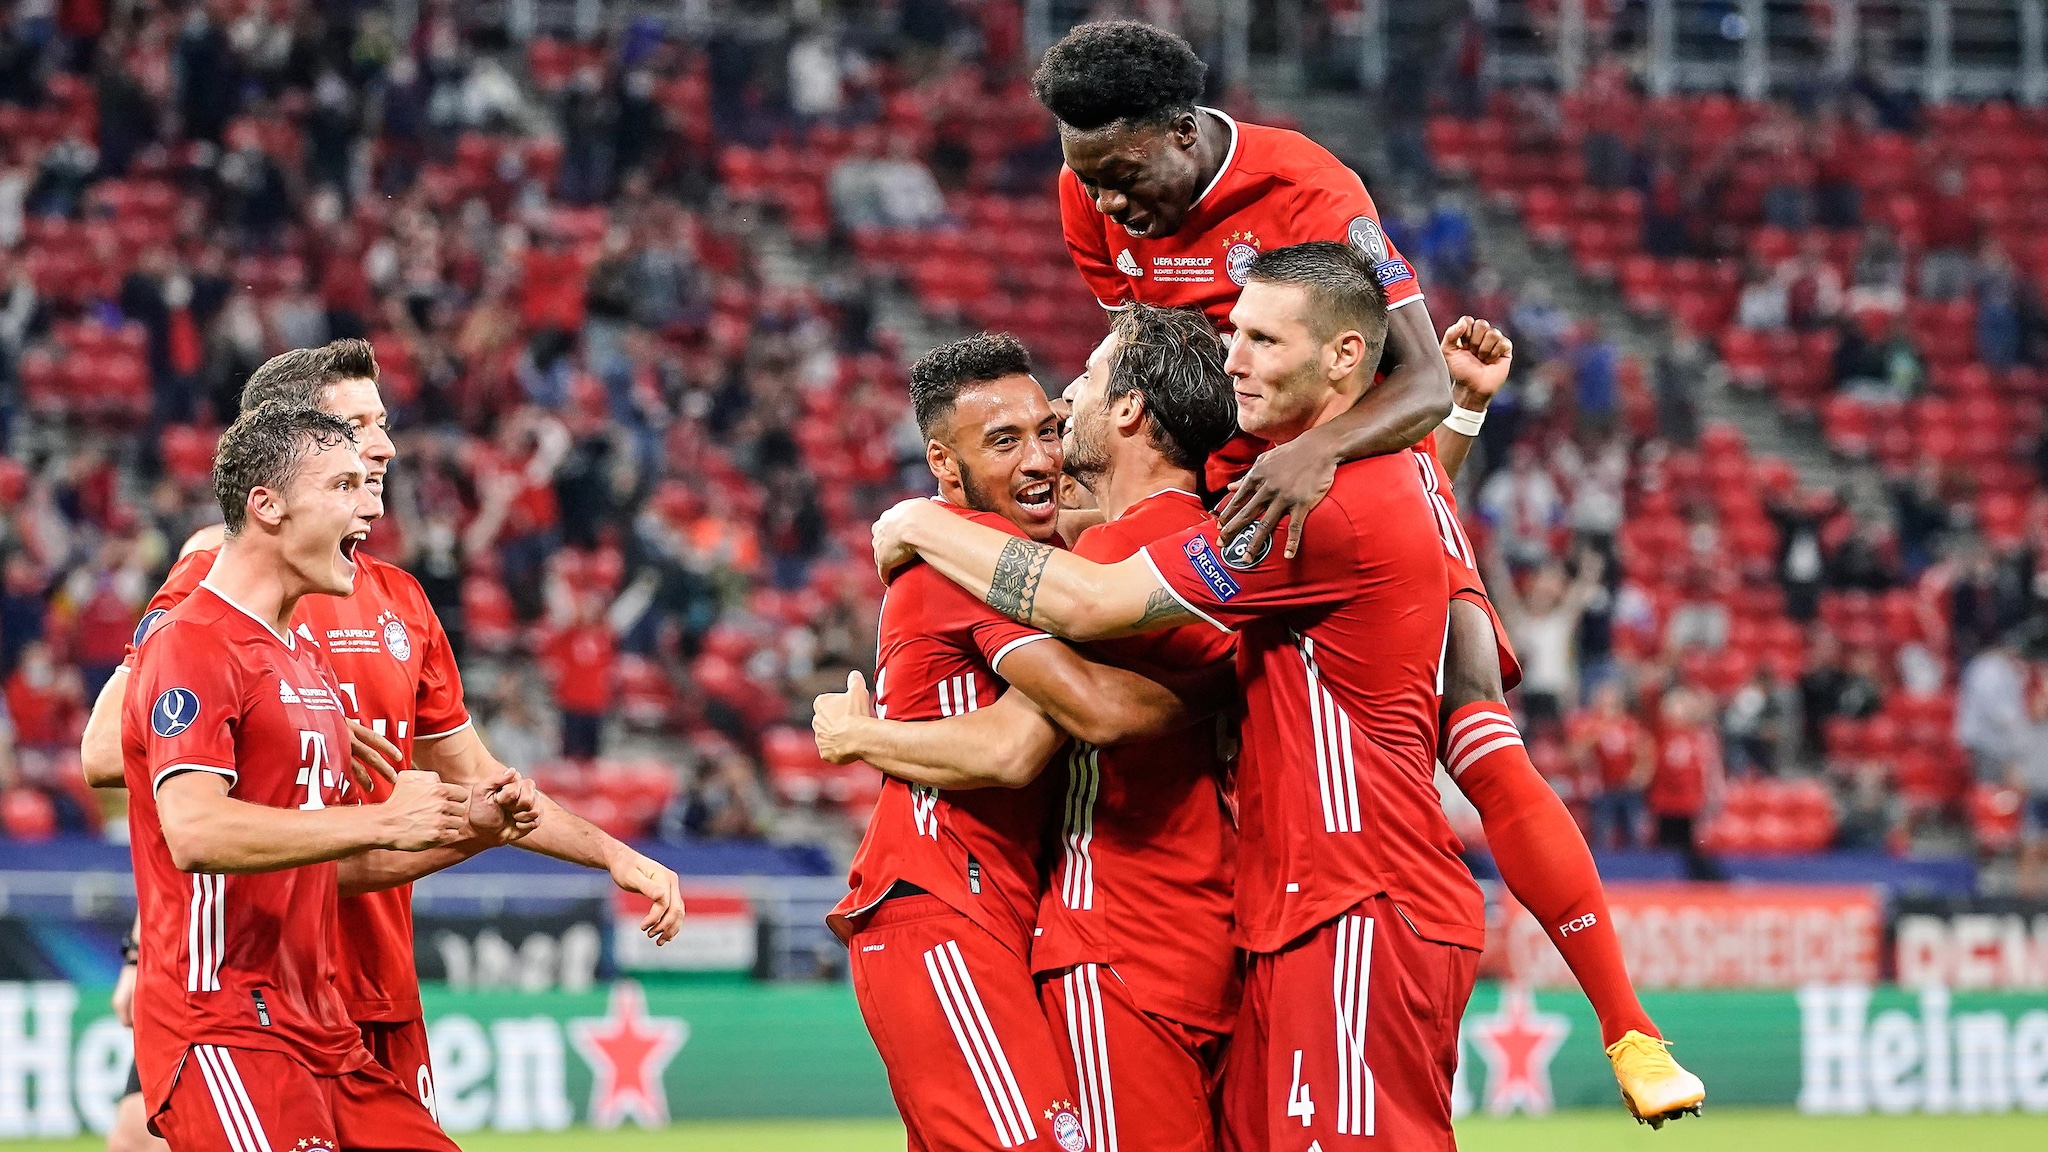 Banderin Bayern Munich München-Sevilla final Supercup 2020 